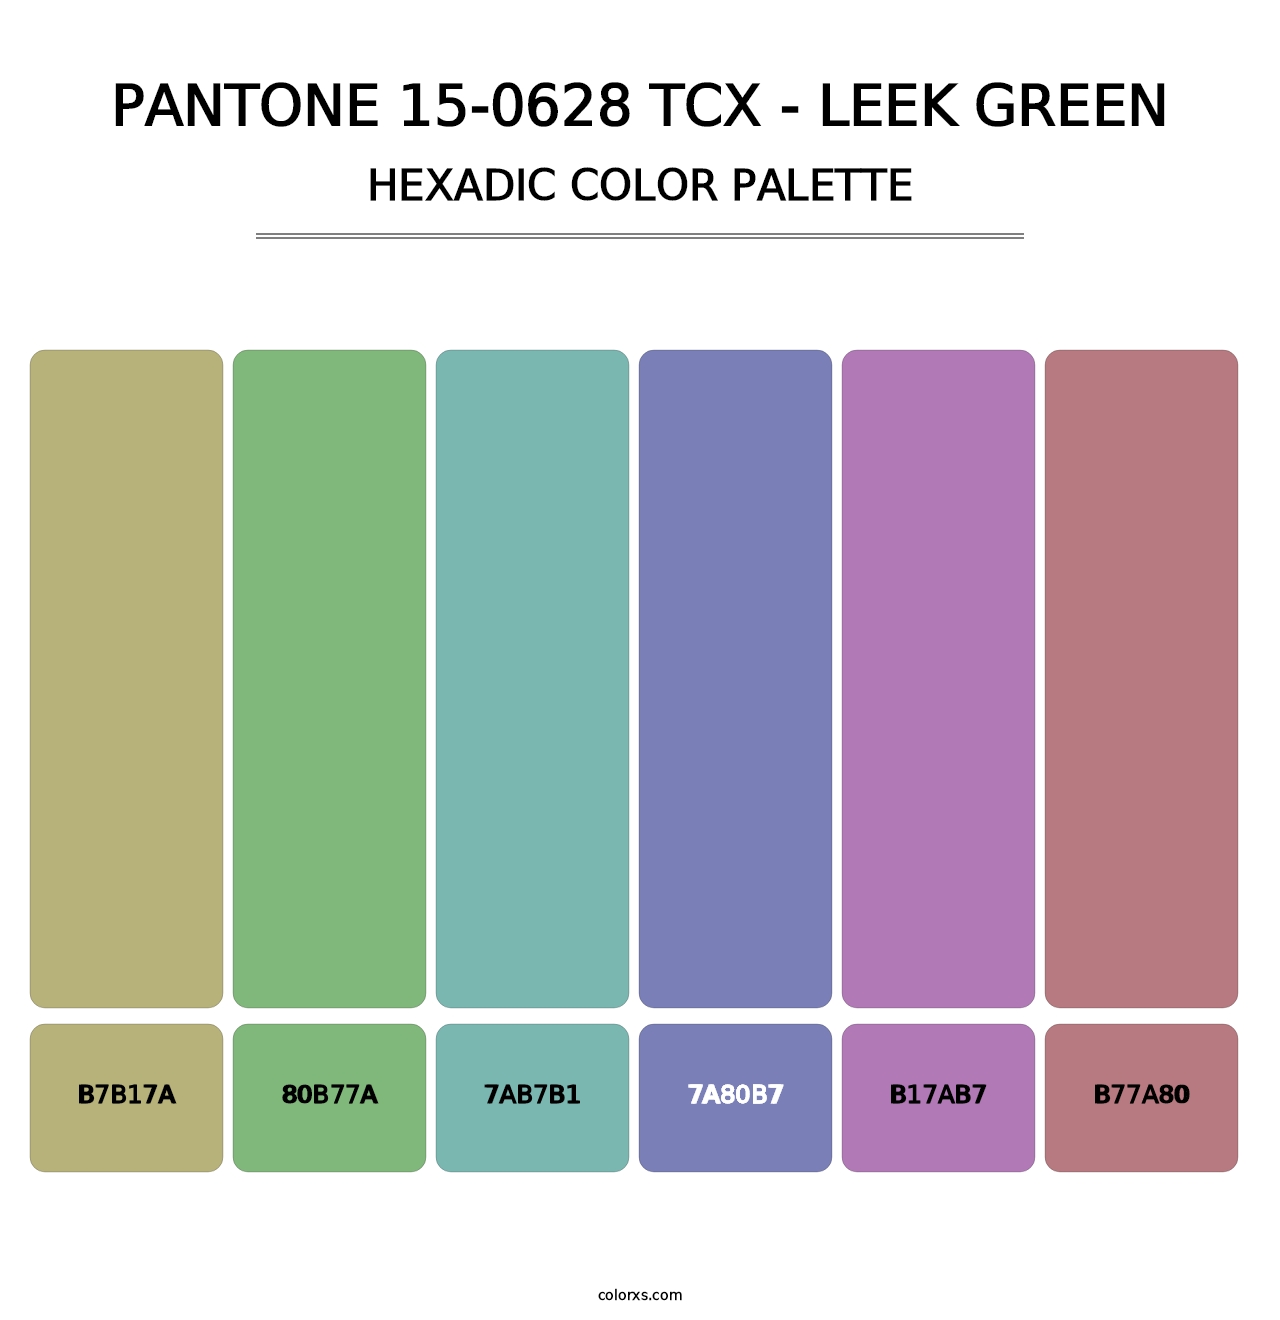 PANTONE 15-0628 TCX - Leek Green - Hexadic Color Palette